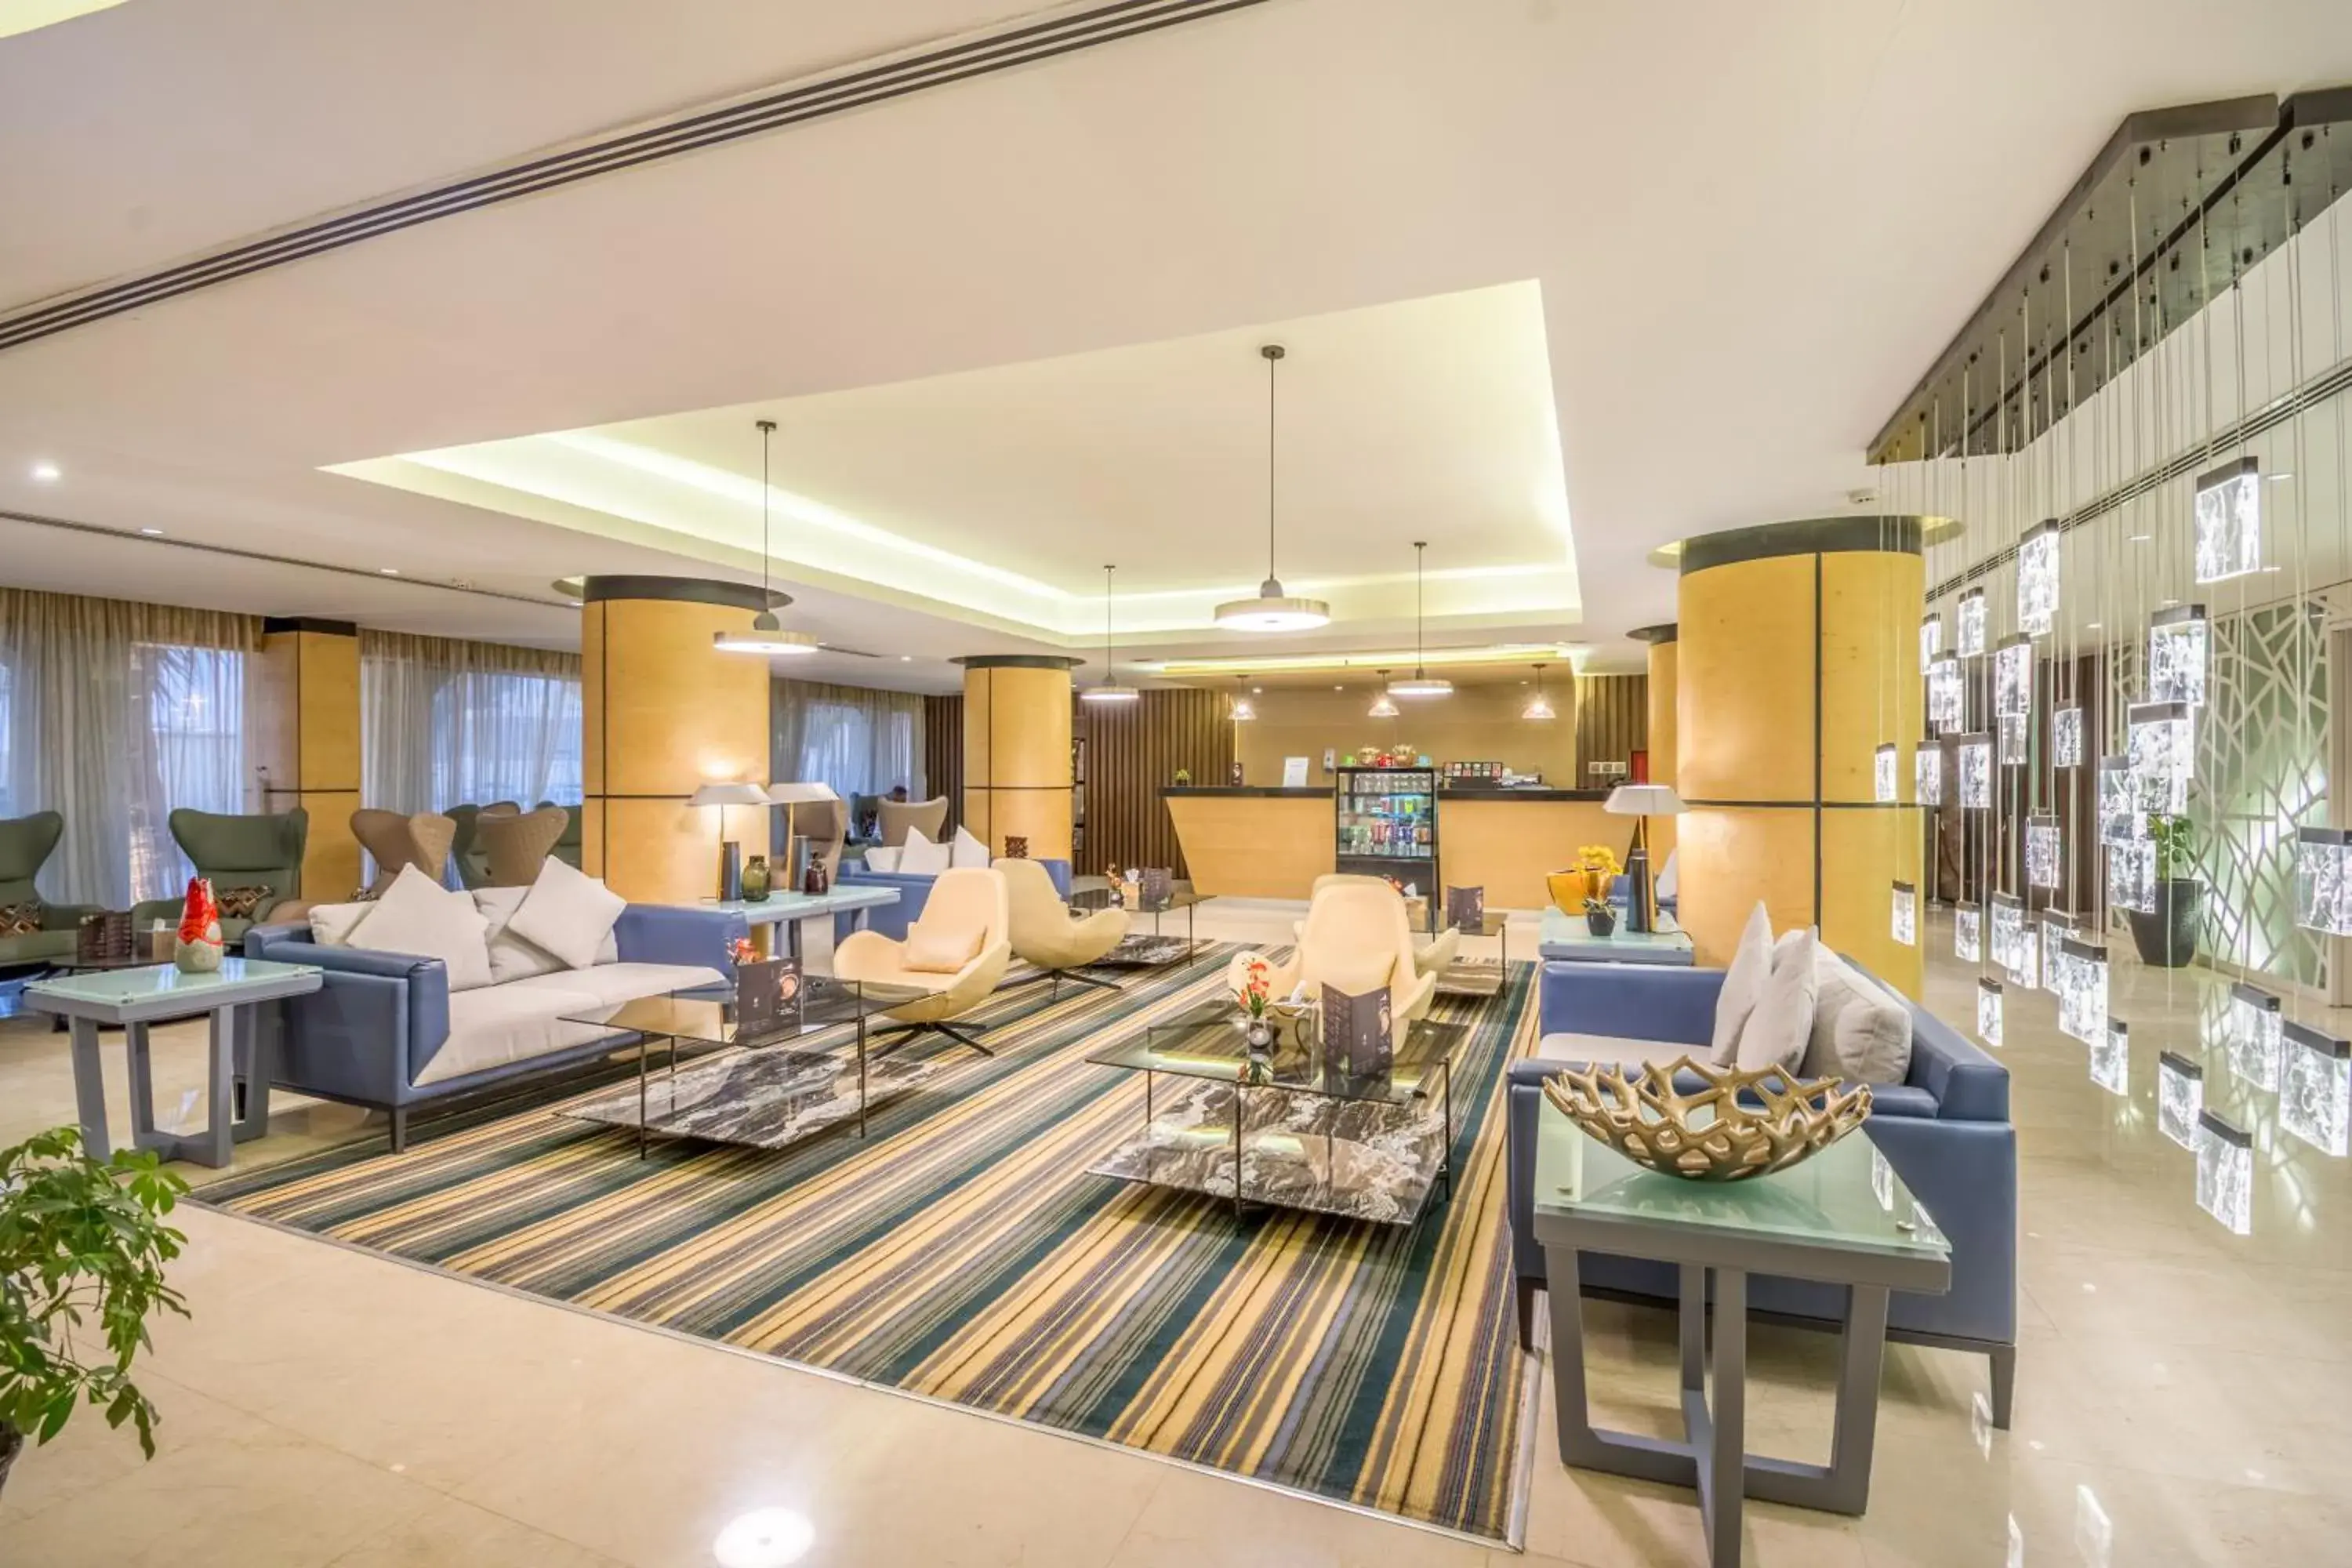 Lobby or reception in Grand Plaza Riyadh